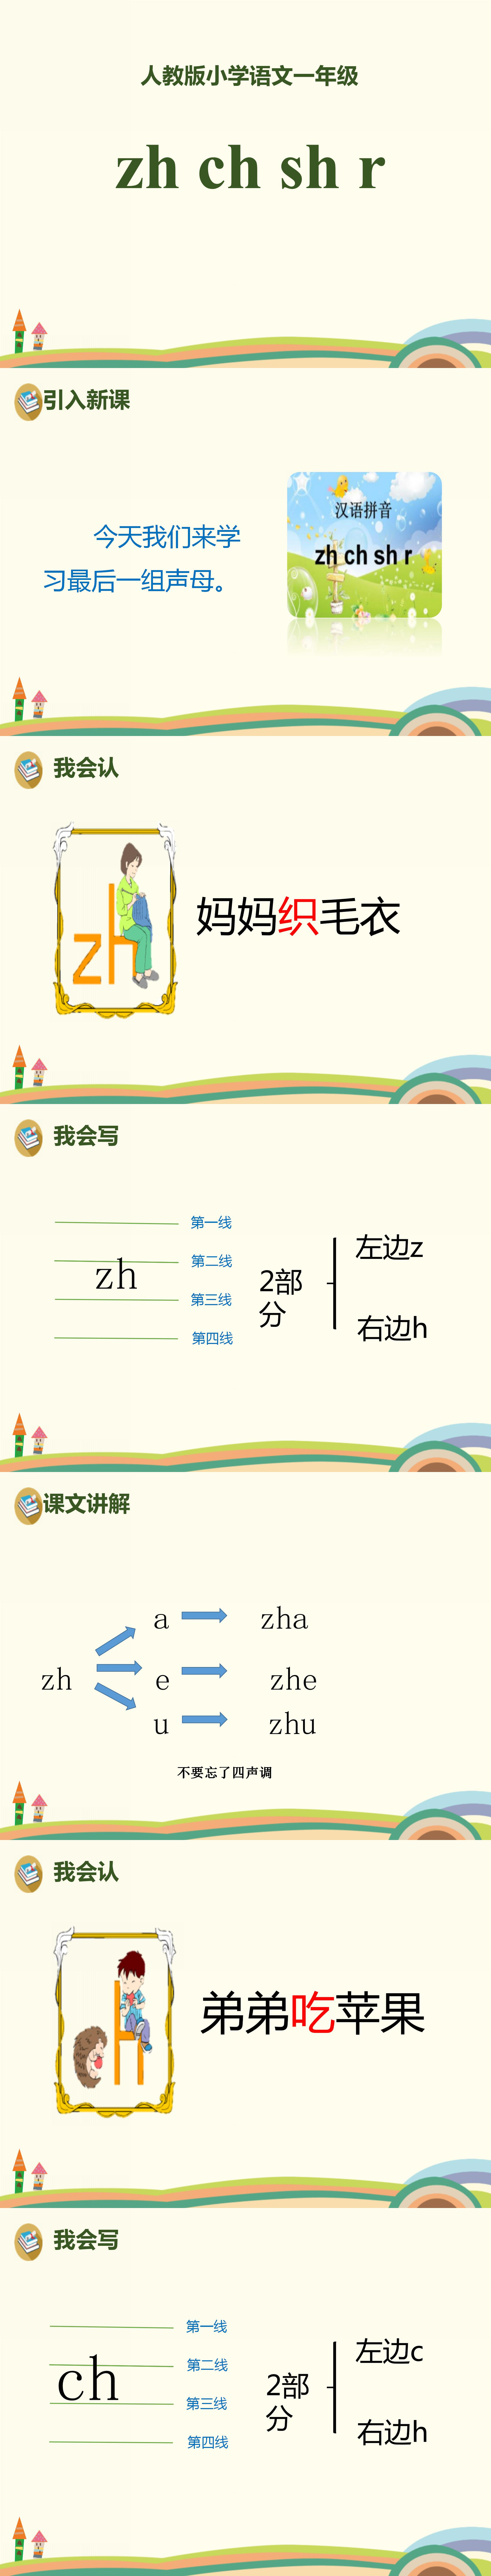 小学语文课件《zhchshr》汉语拼音PPT模板